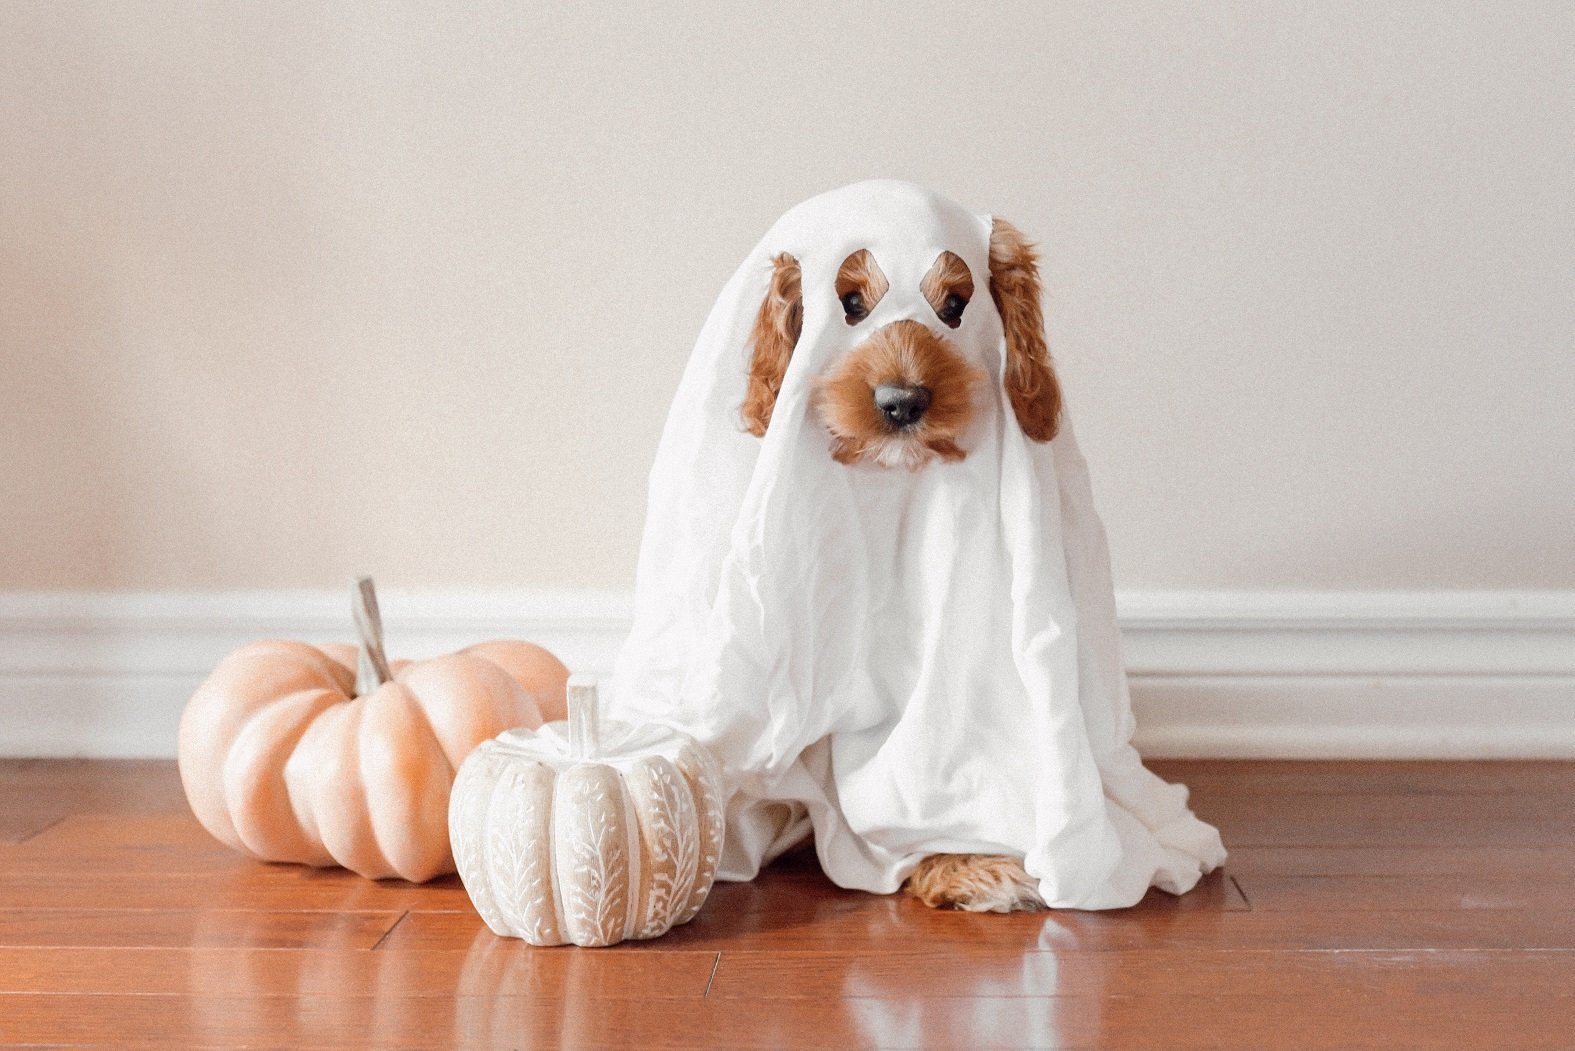 Vols posar una disfressa de Halloween al teu gos? Aquesta és l'advertència dels experts